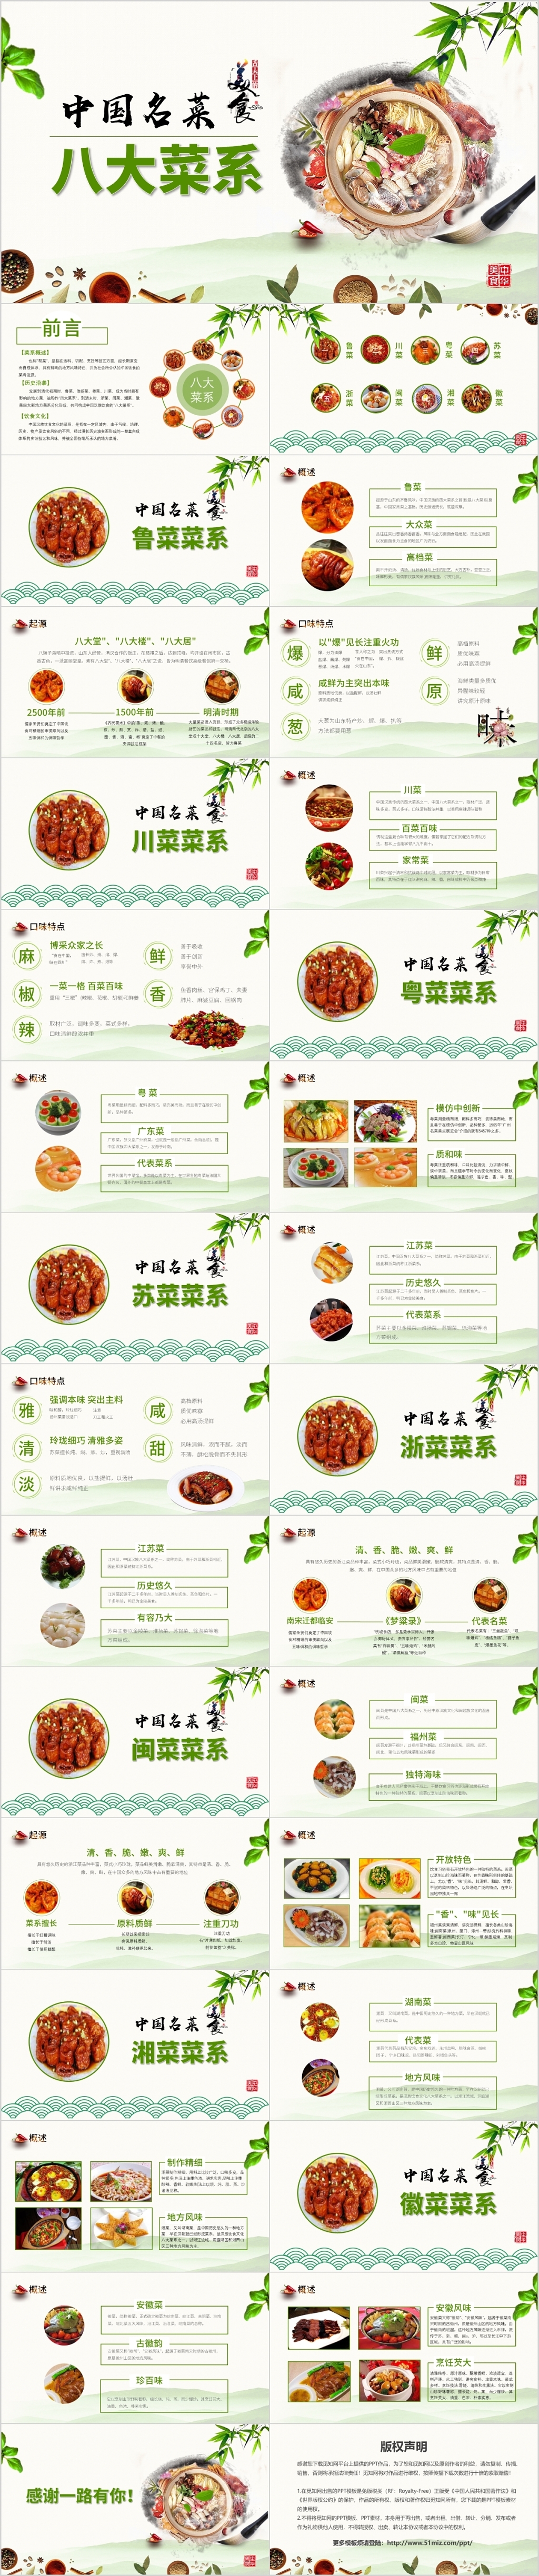 绿色中国风中国名菜八大菜系介绍PPT饮食食品餐饮PPT模板